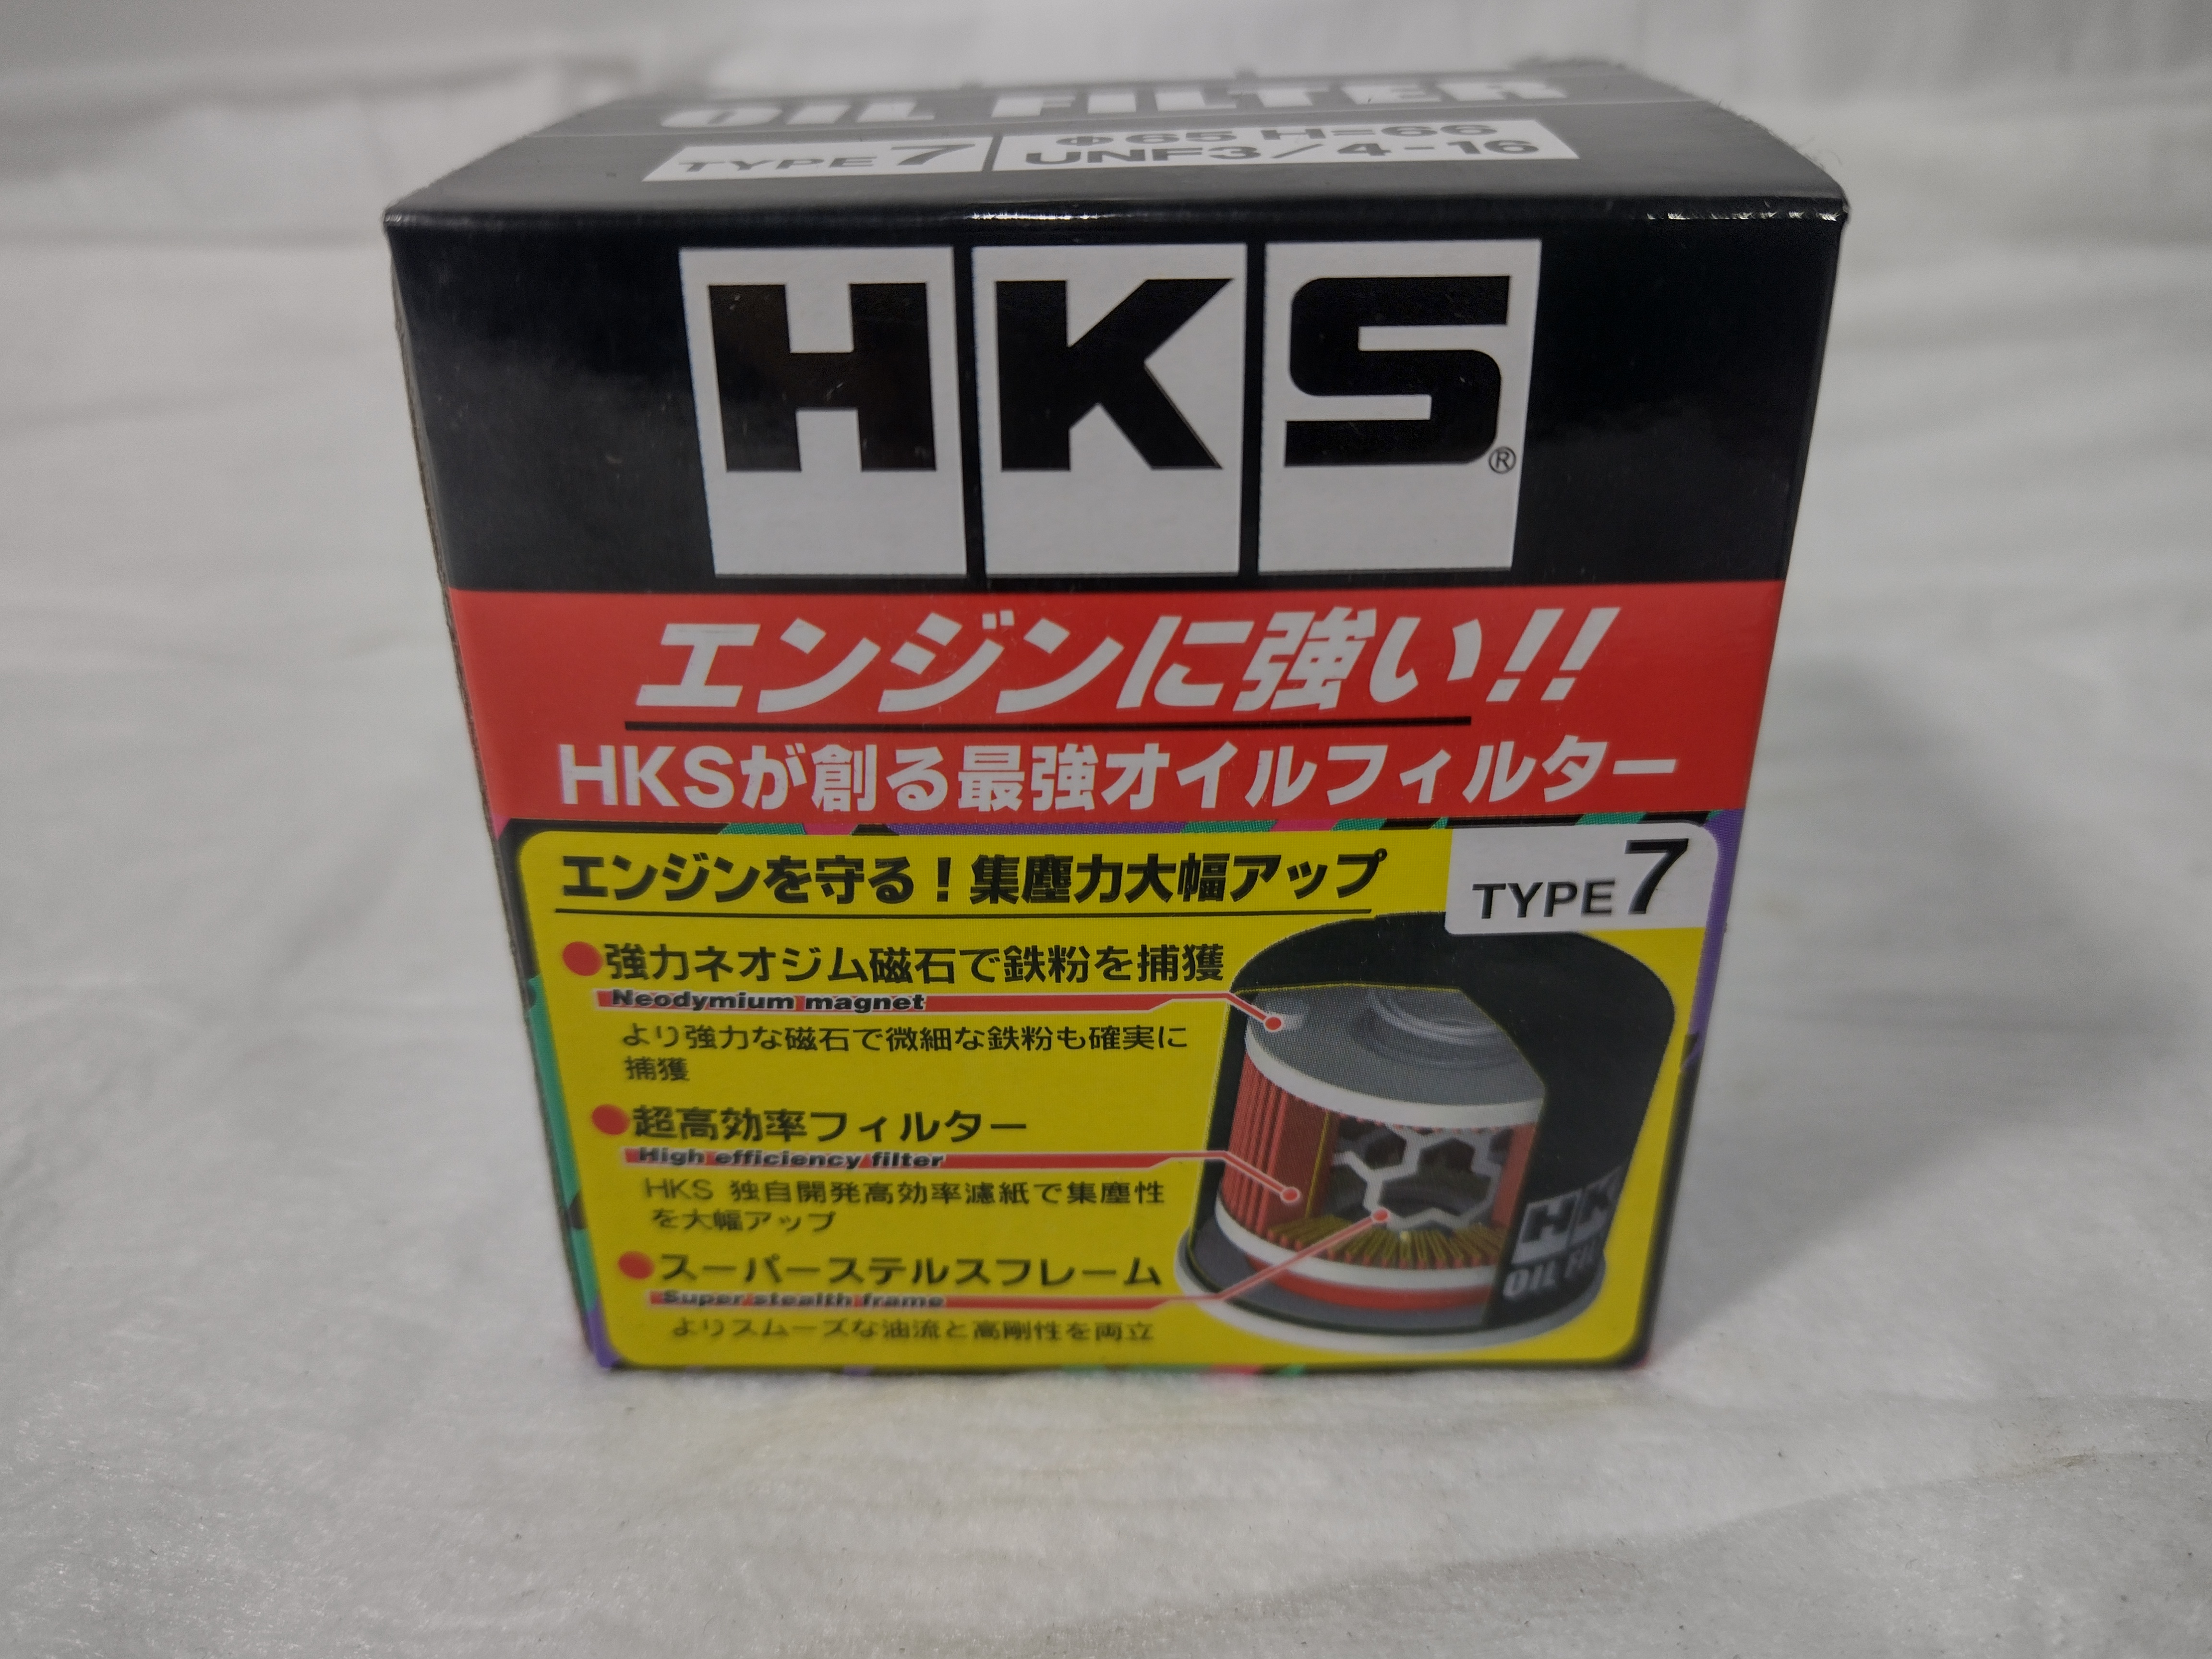 HKS hybrid sports Ölfilter 65mm UNF 3/4 -16 für Nissan Skyline, Suzuki, Toyota - 52009-AK011